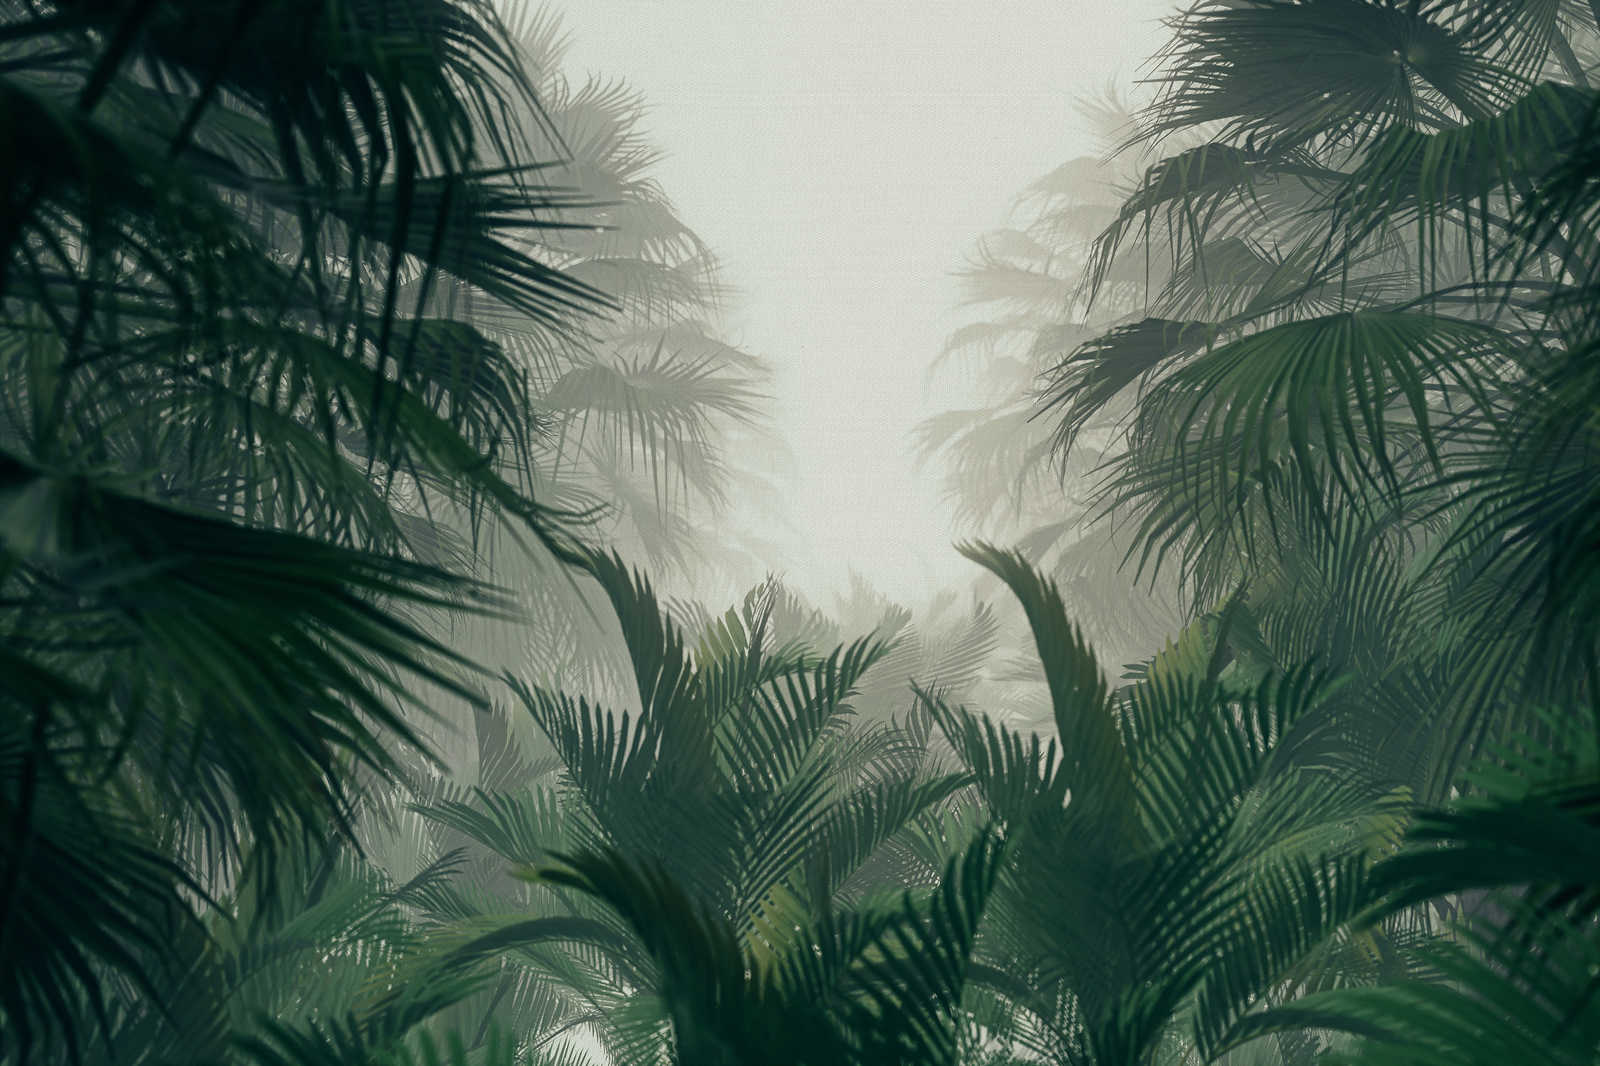             Pittura su tela con vista sulla giungla nella stagione piovosa - 0,90 m x 0,60 m
        